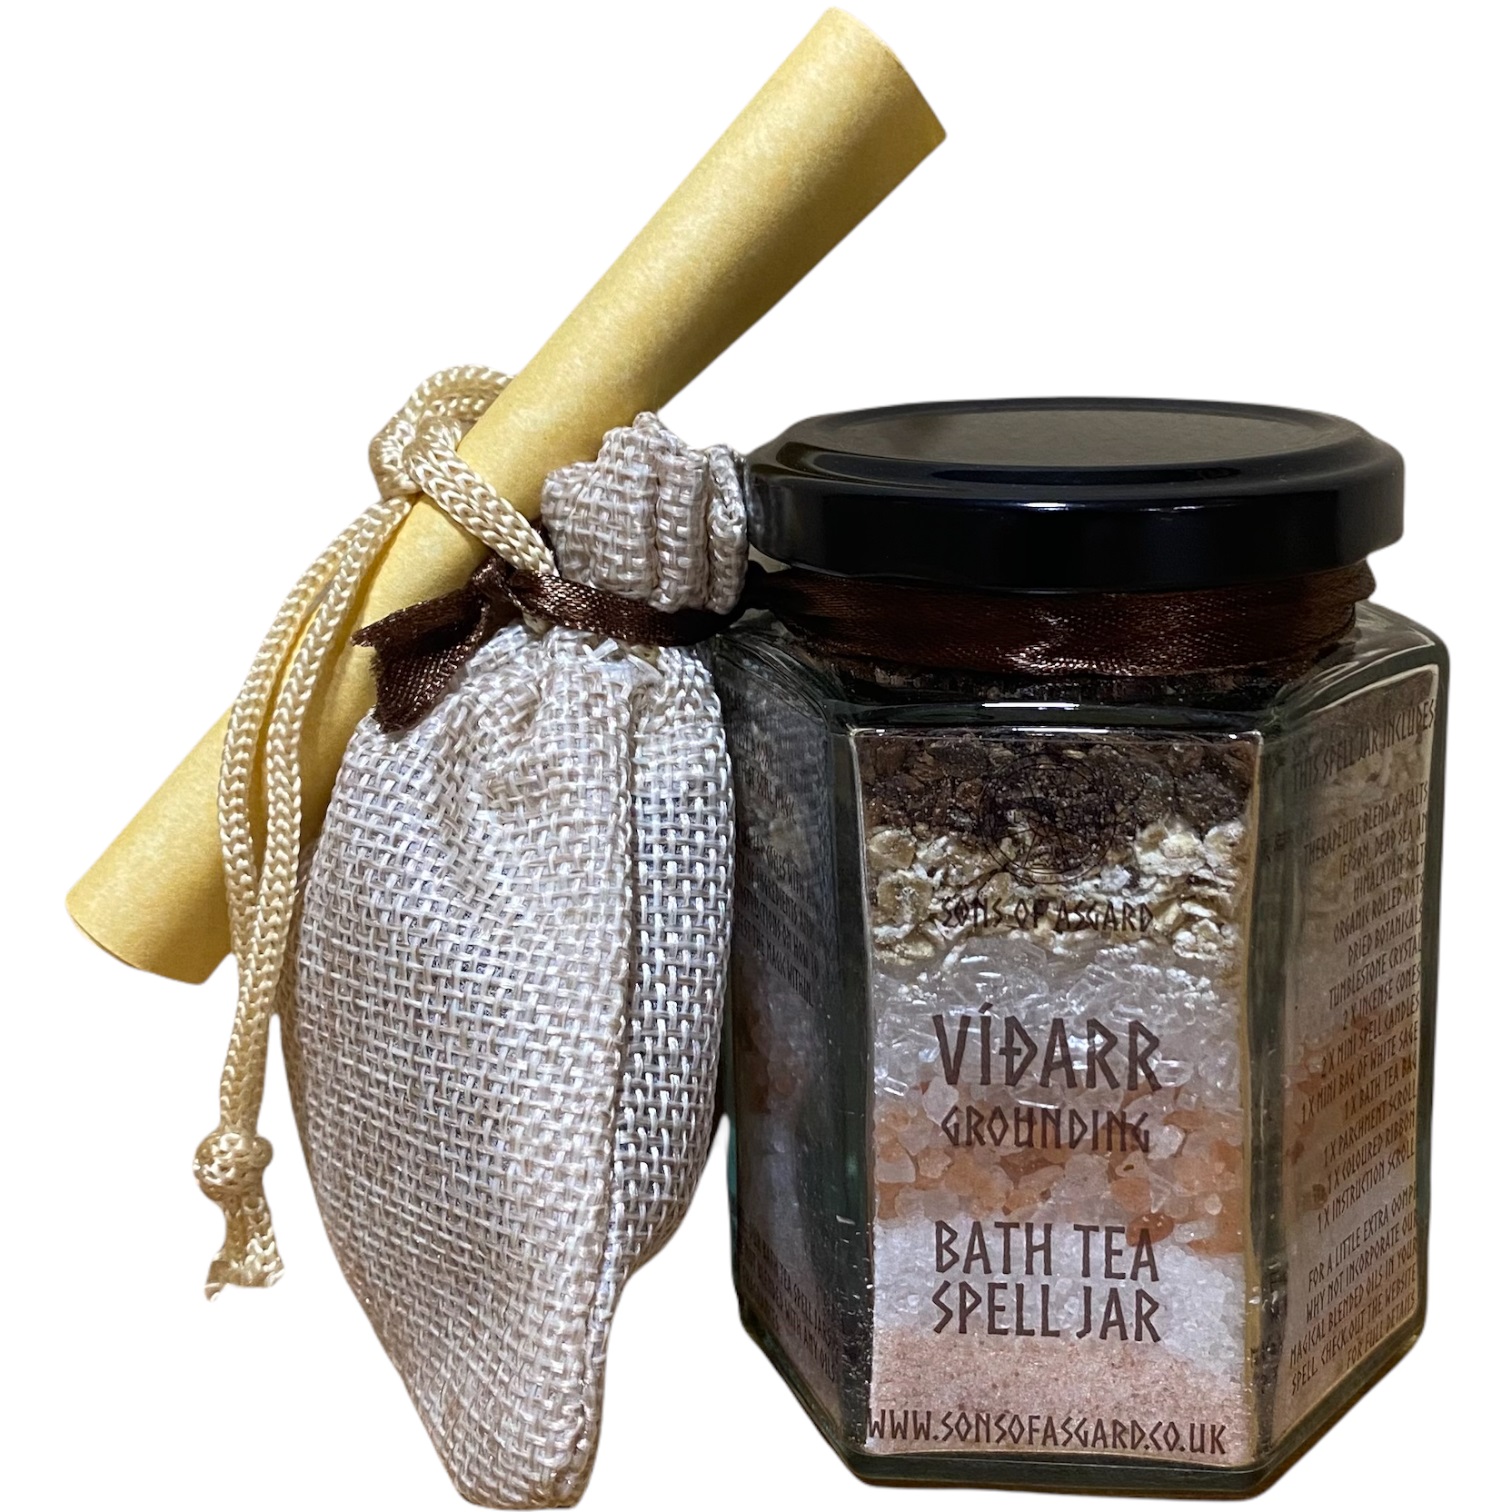 Vidarr (Grounding) - Bath Tea Spell Jar